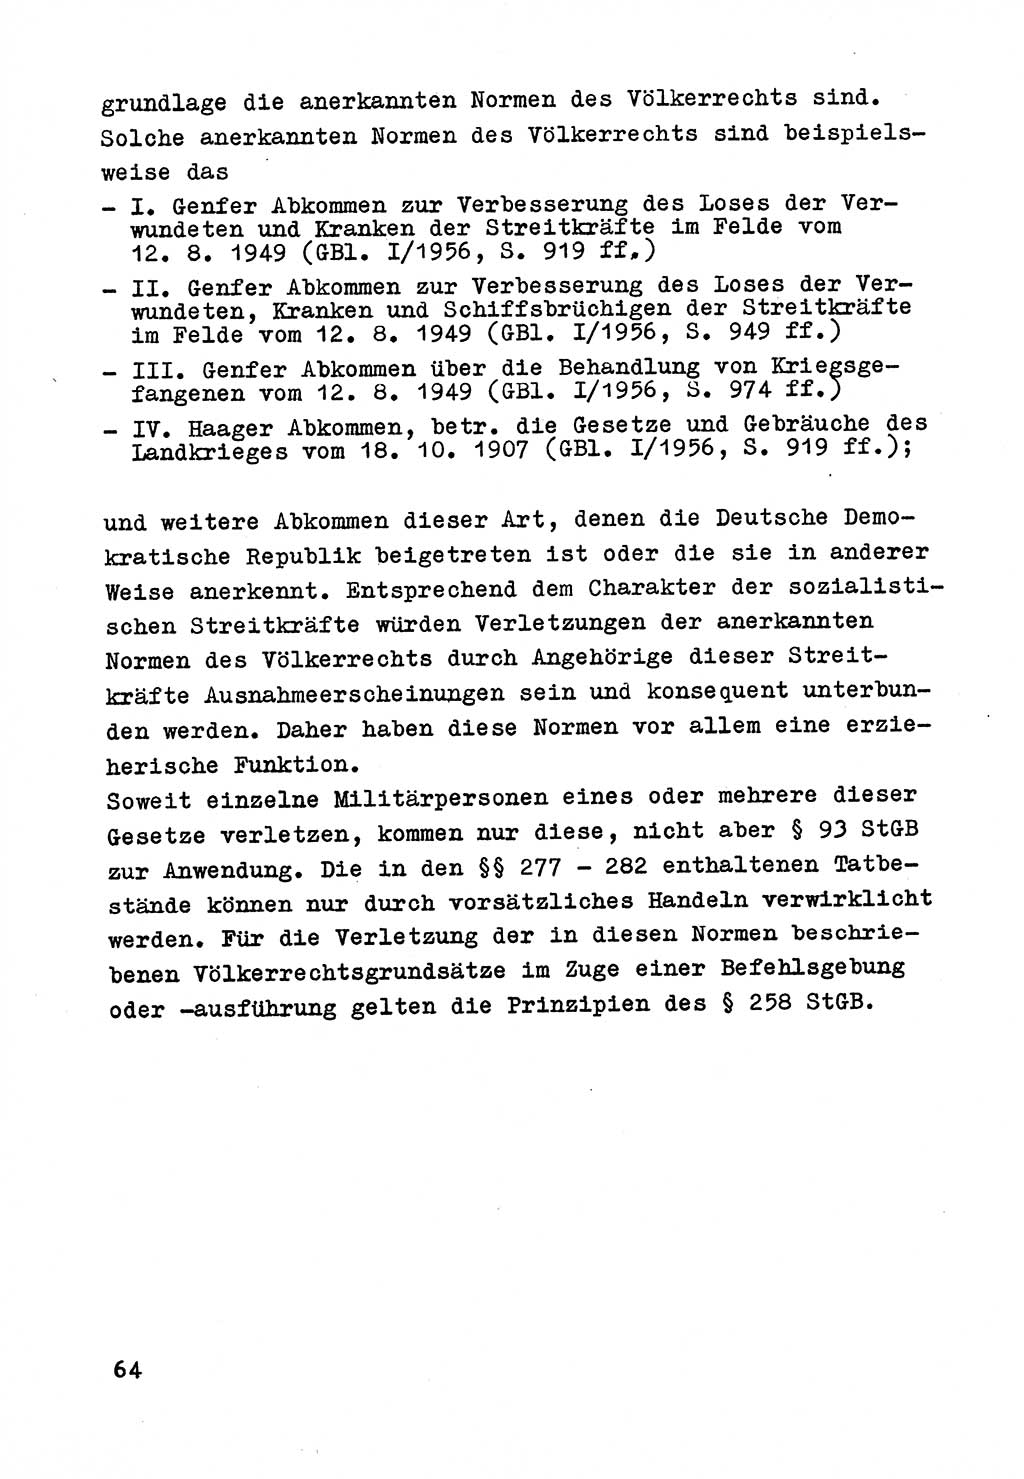 Strafrecht der DDR (Deutsche Demokratische Republik), Besonderer Teil, Lehrmaterial, Heft 9 1969, Seite 64 (Strafr. DDR BT Lehrmat. H. 9 1969, S. 64)